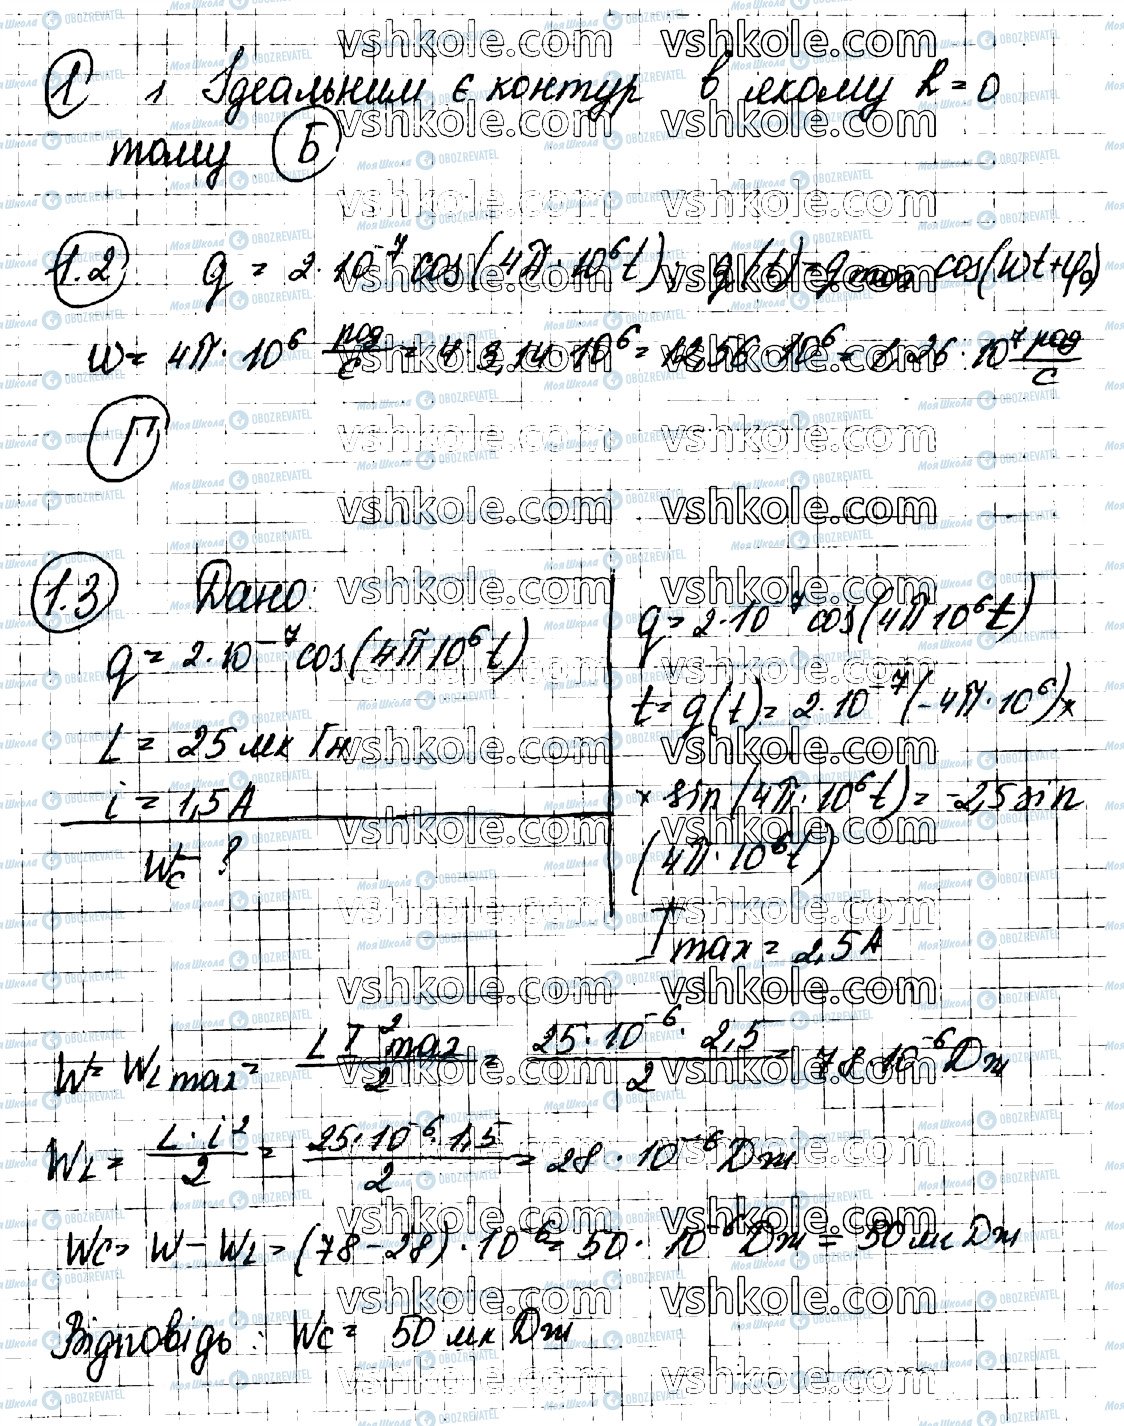 ГДЗ Фізика 11 клас сторінка 1